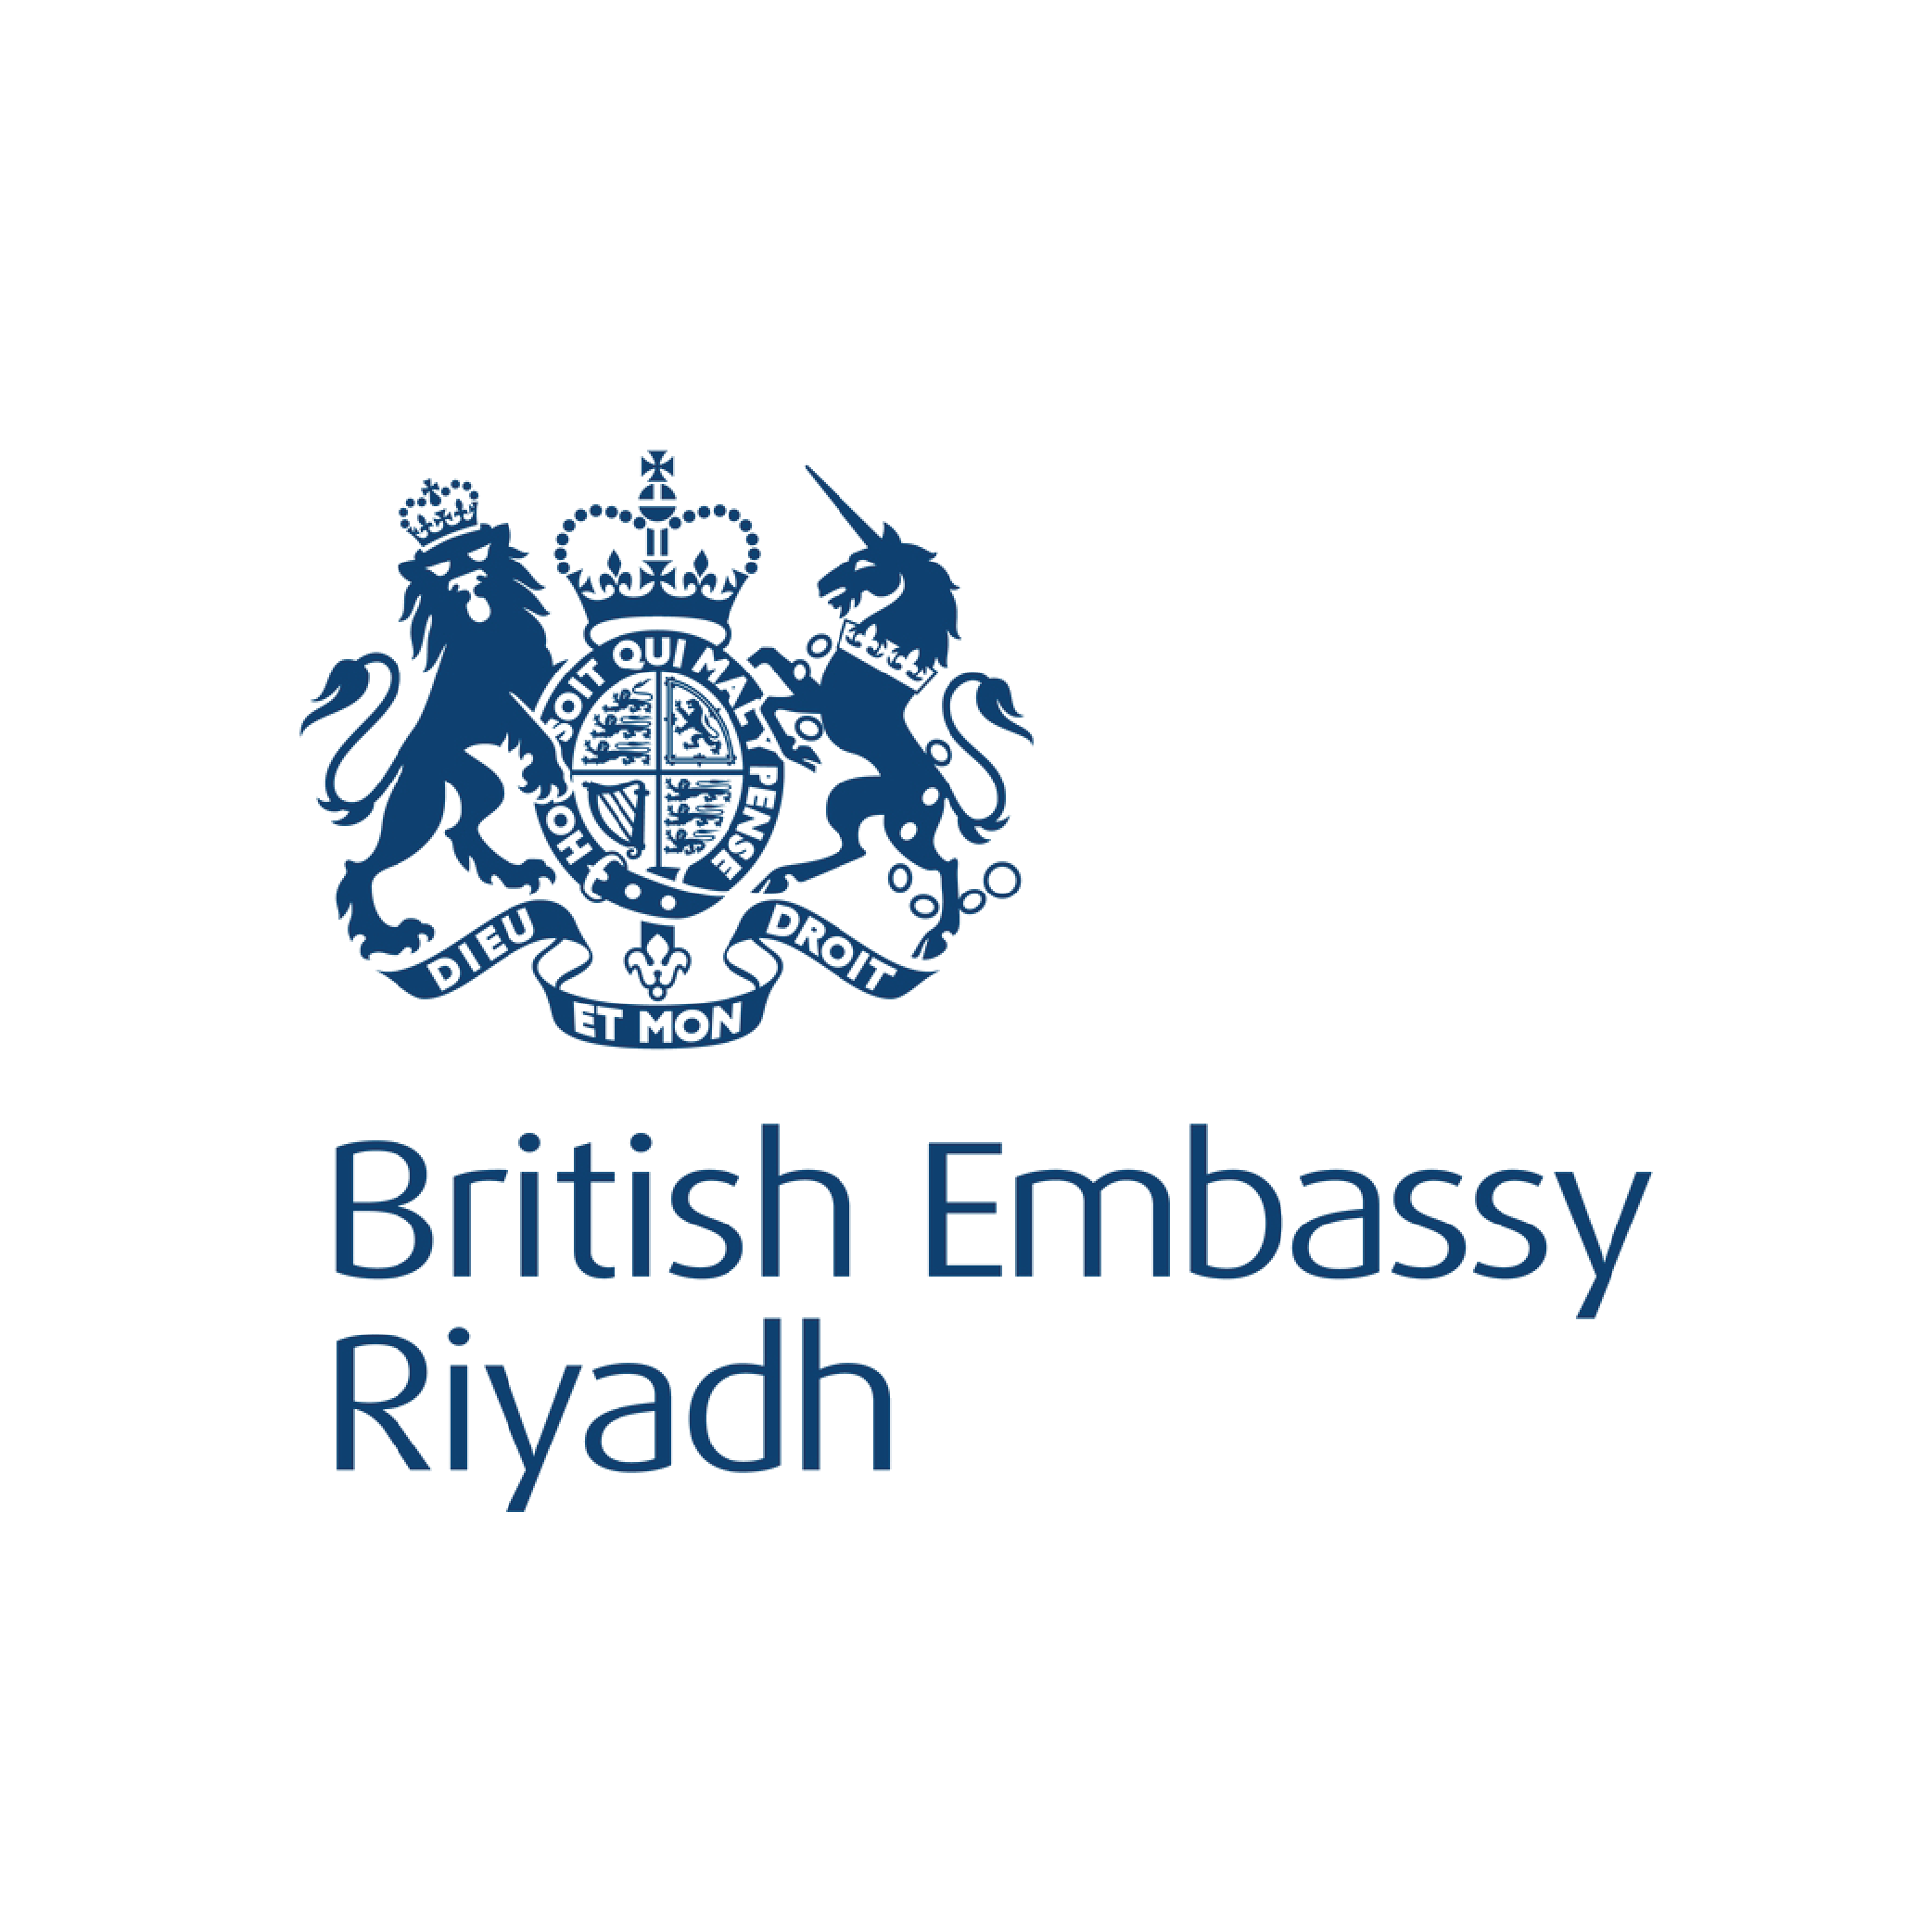 British Embassy Riyadh logo - SEC Newgate